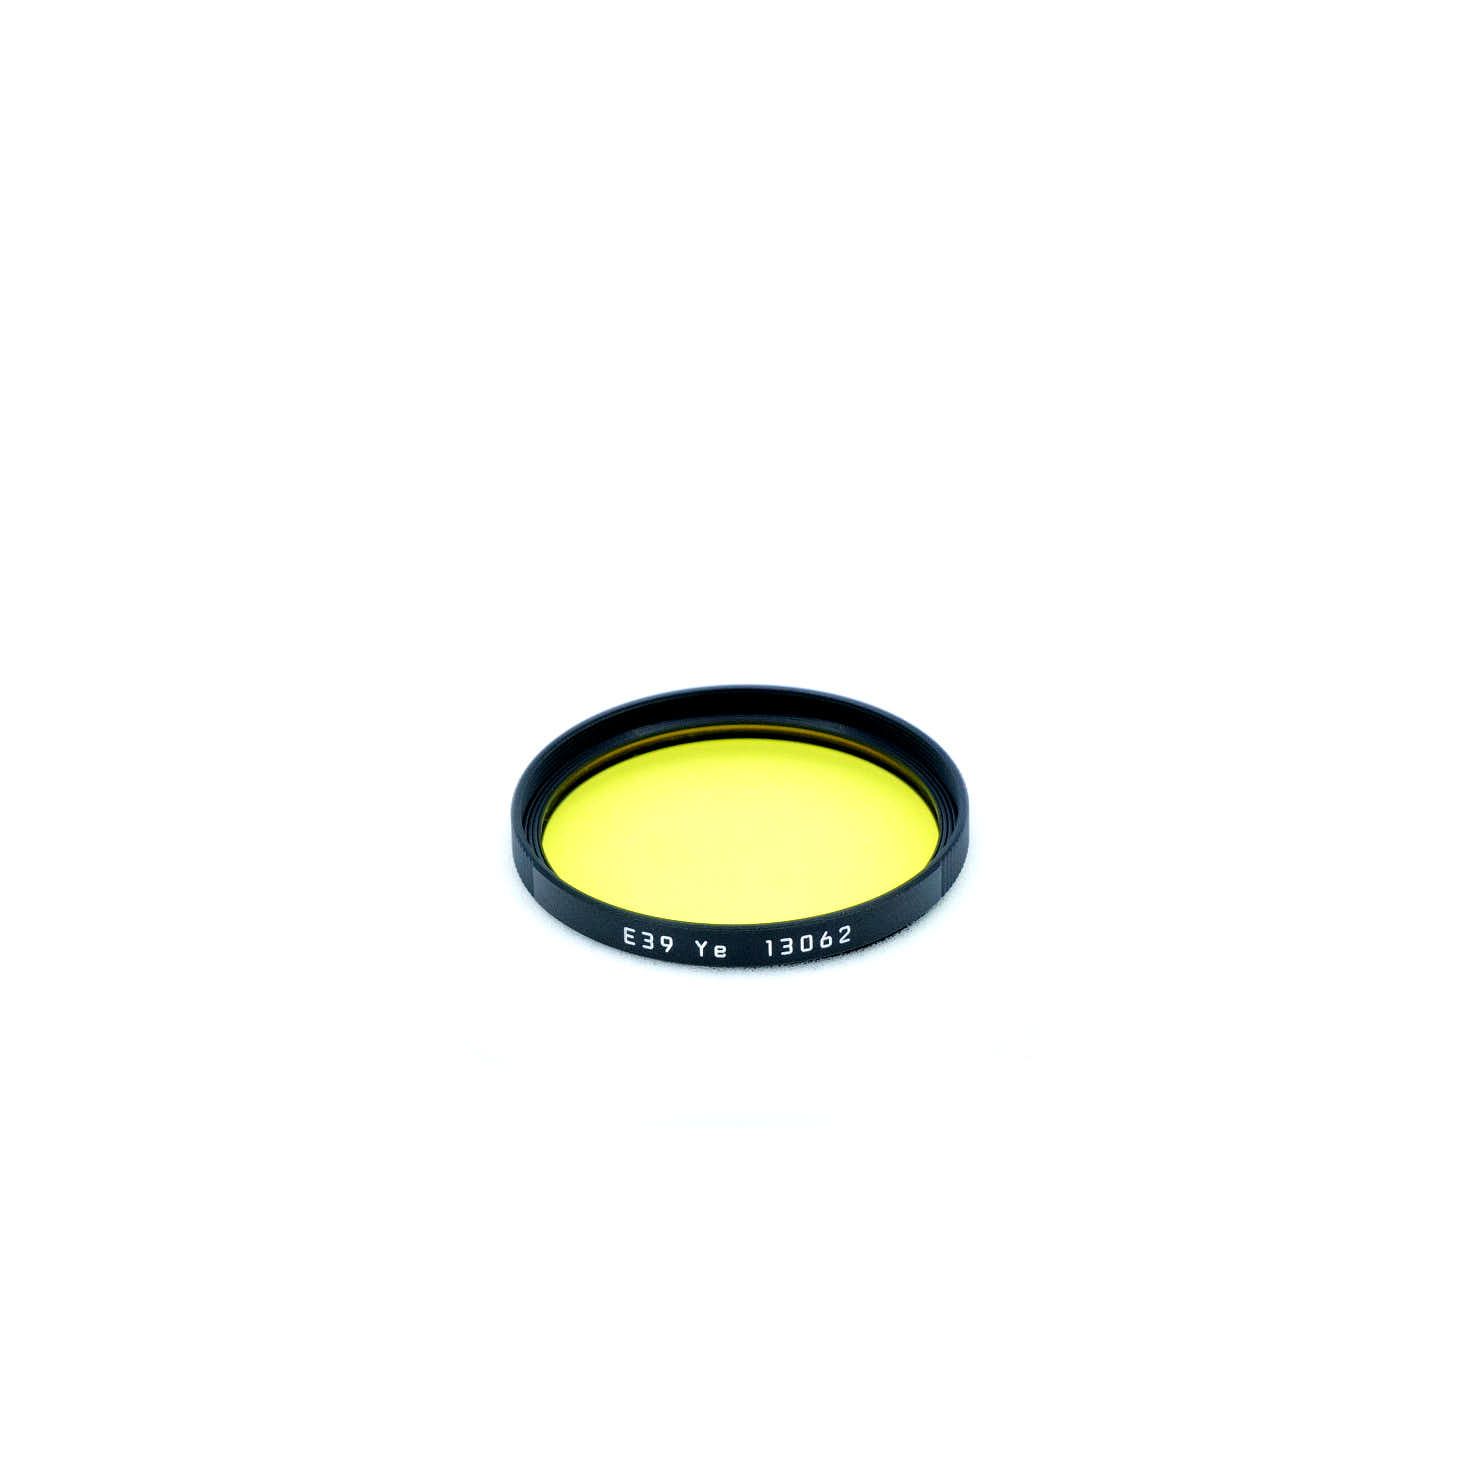 Leica UVa filter E39 Yellow